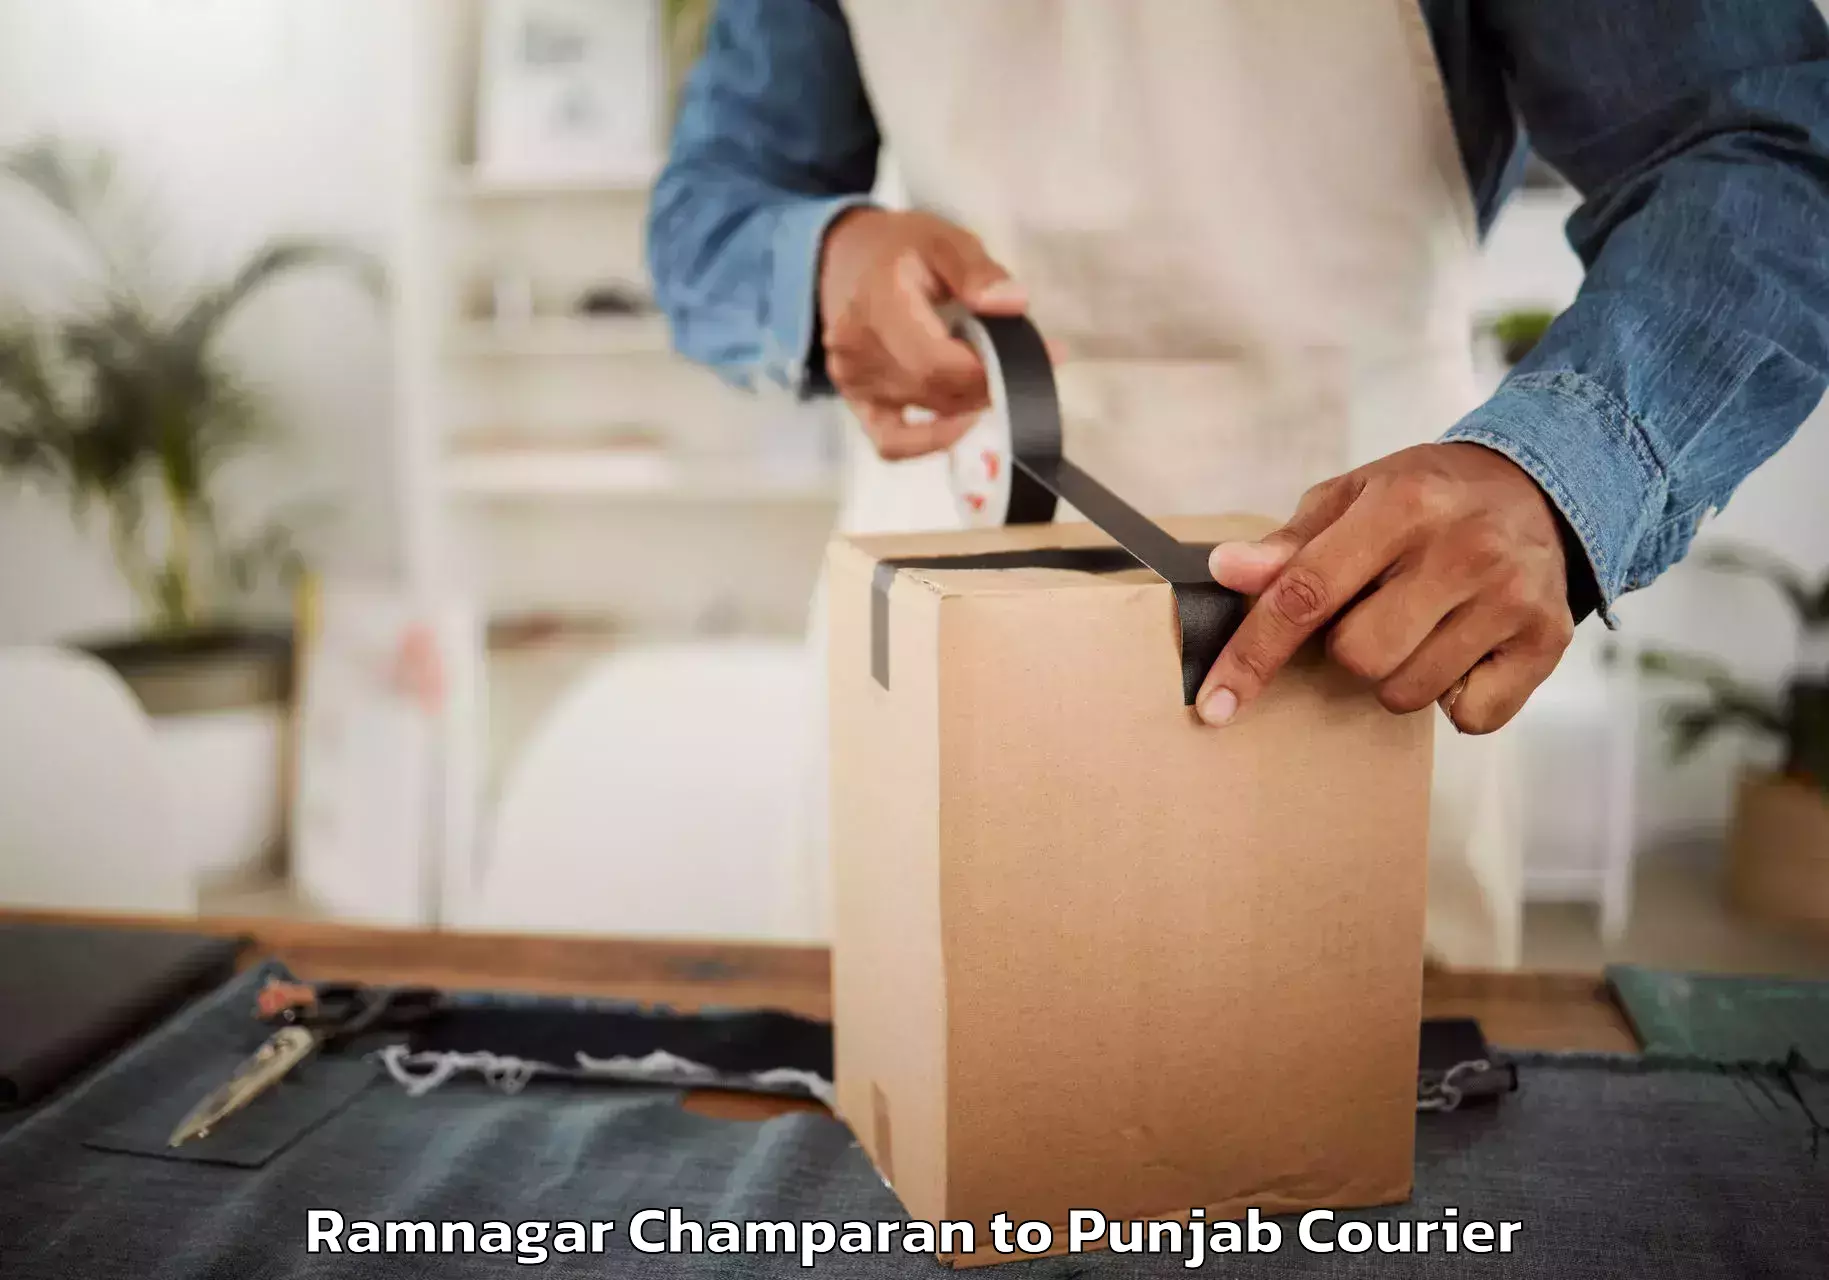 Professional packing services Ramnagar Champaran to Samana